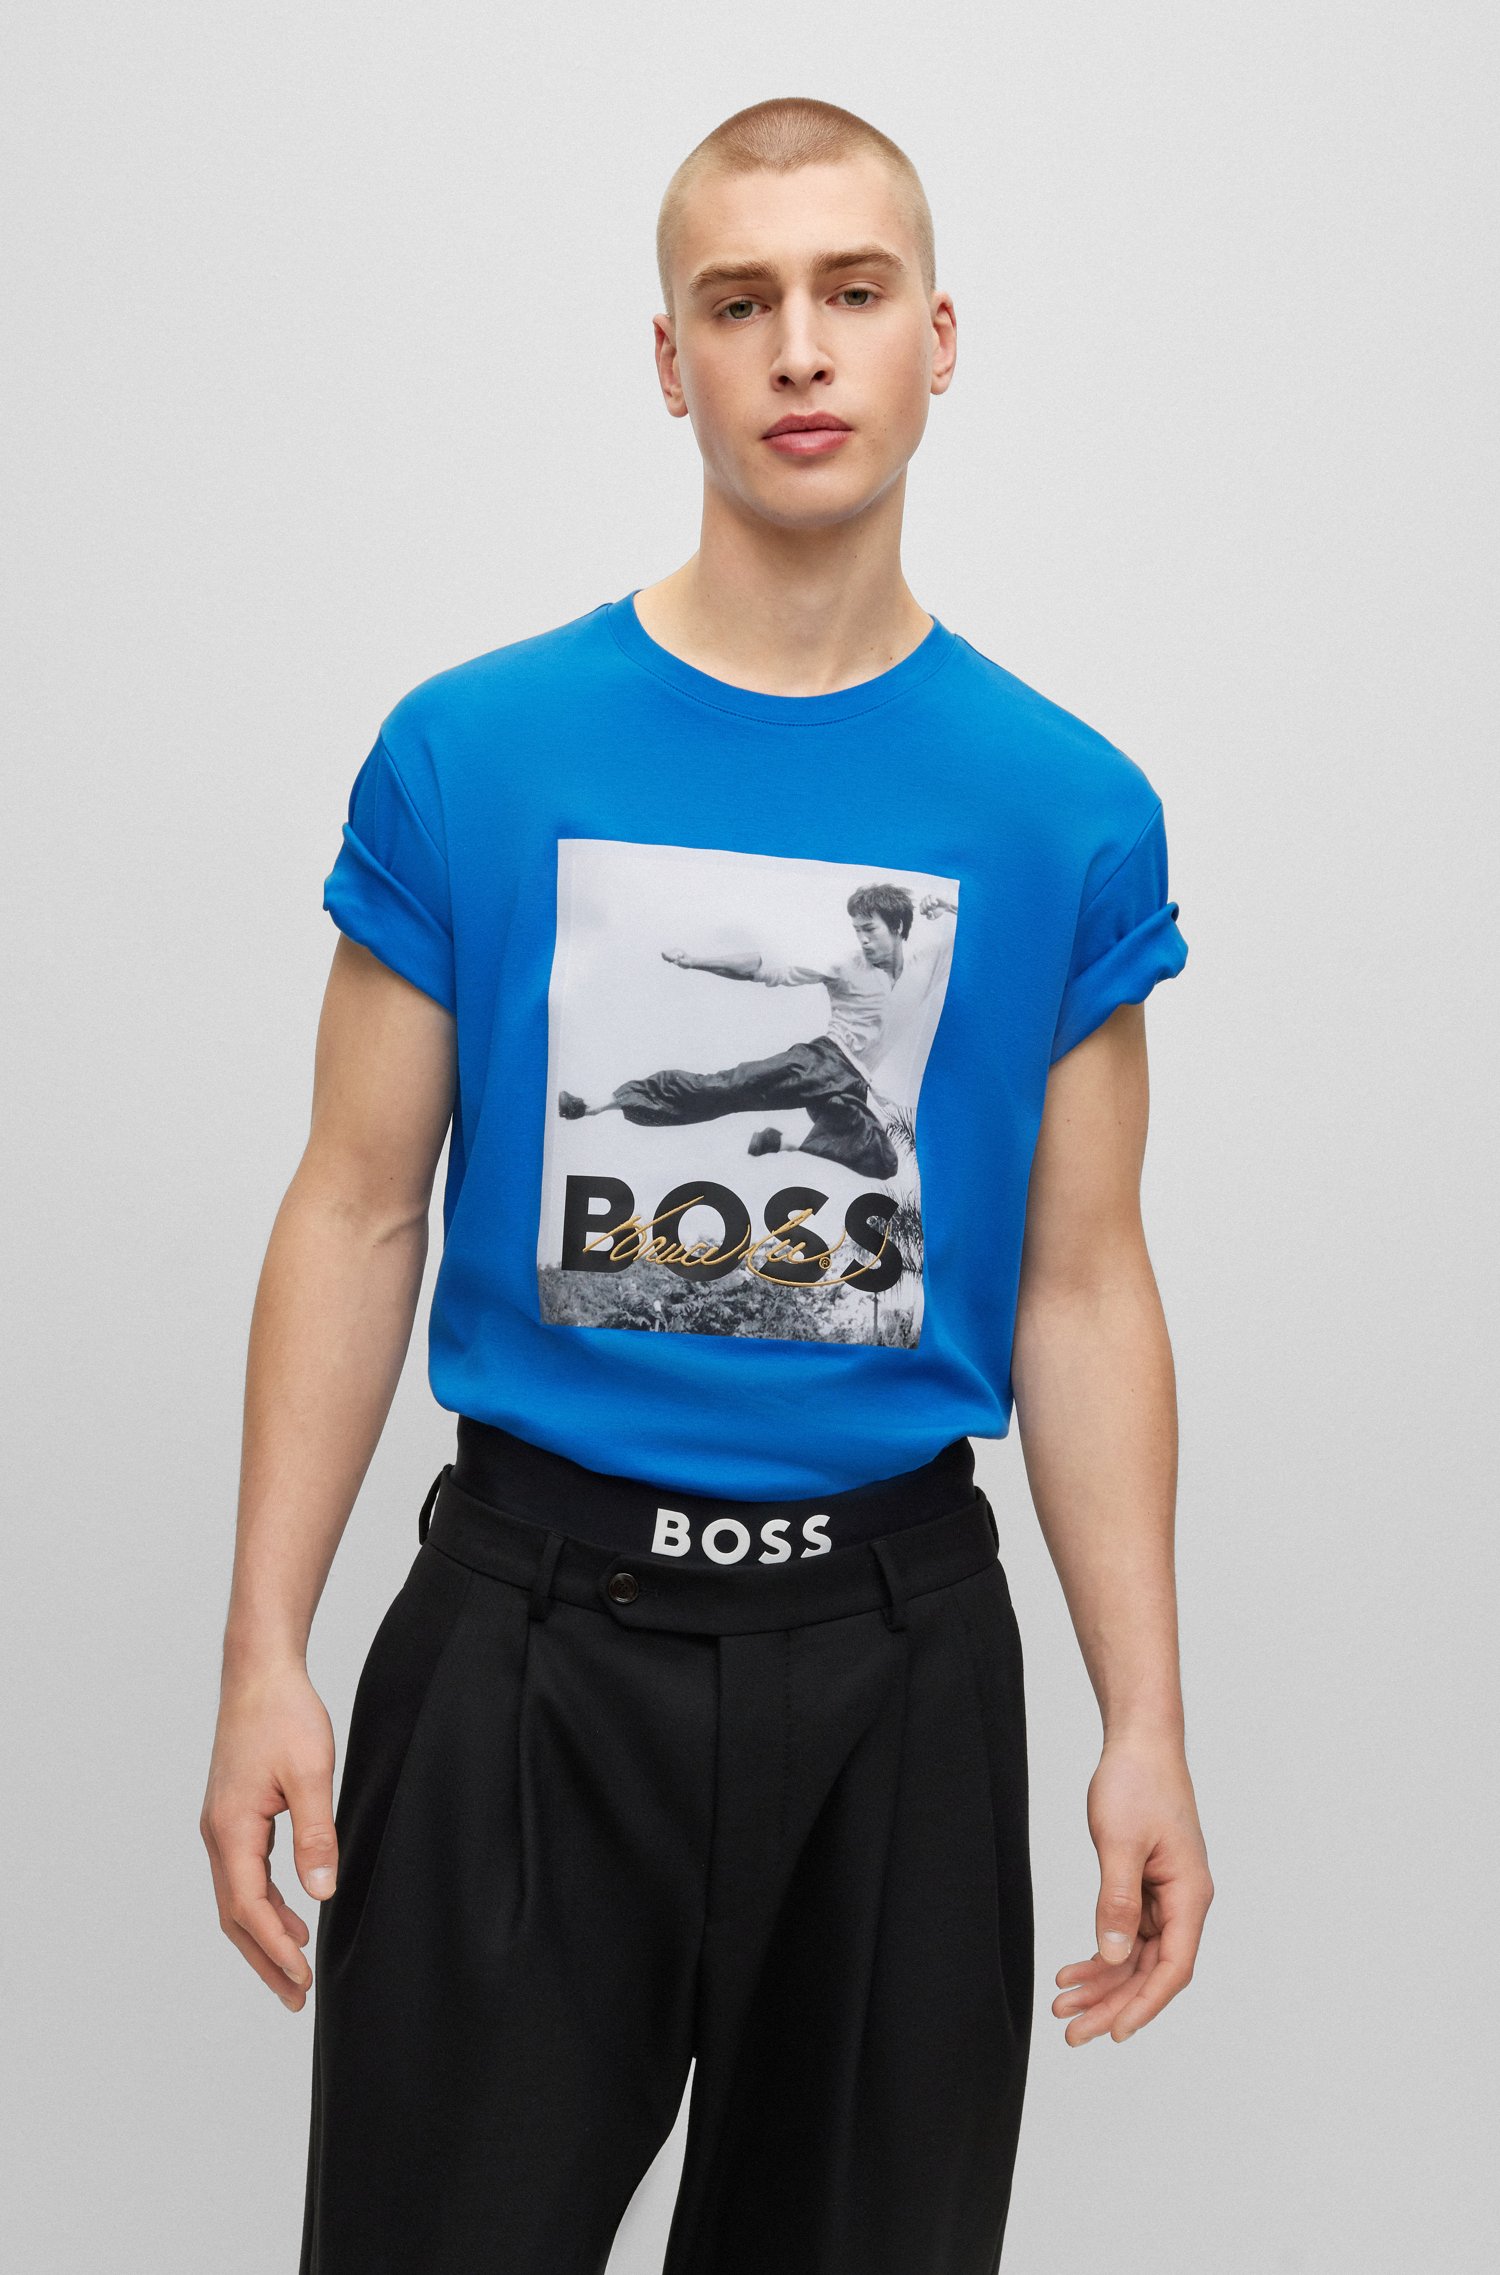 Camiseta BOSS x Bruce Lee con ilustración fotográfica y diseño de género neutro